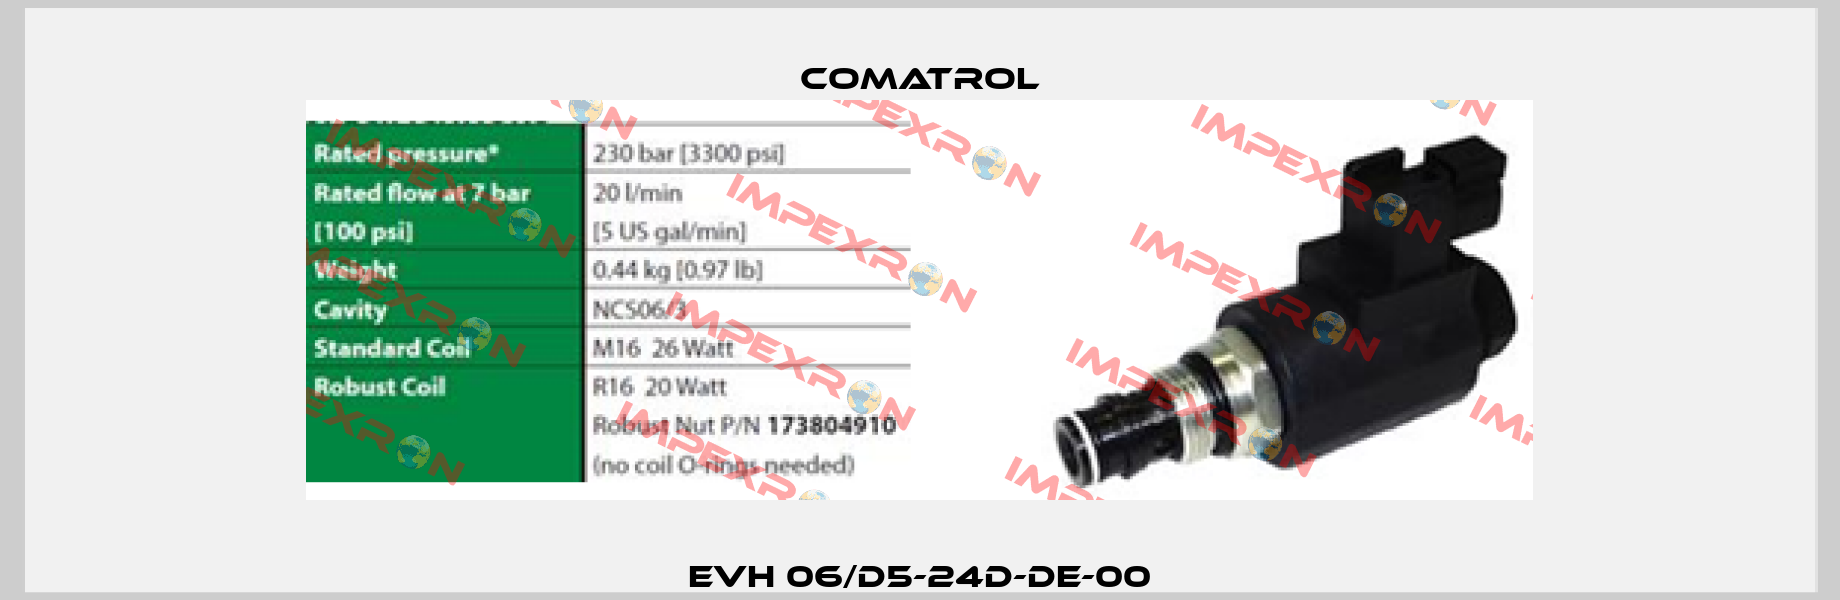 EVH 06/D5-24D-DE-00 Comatrol